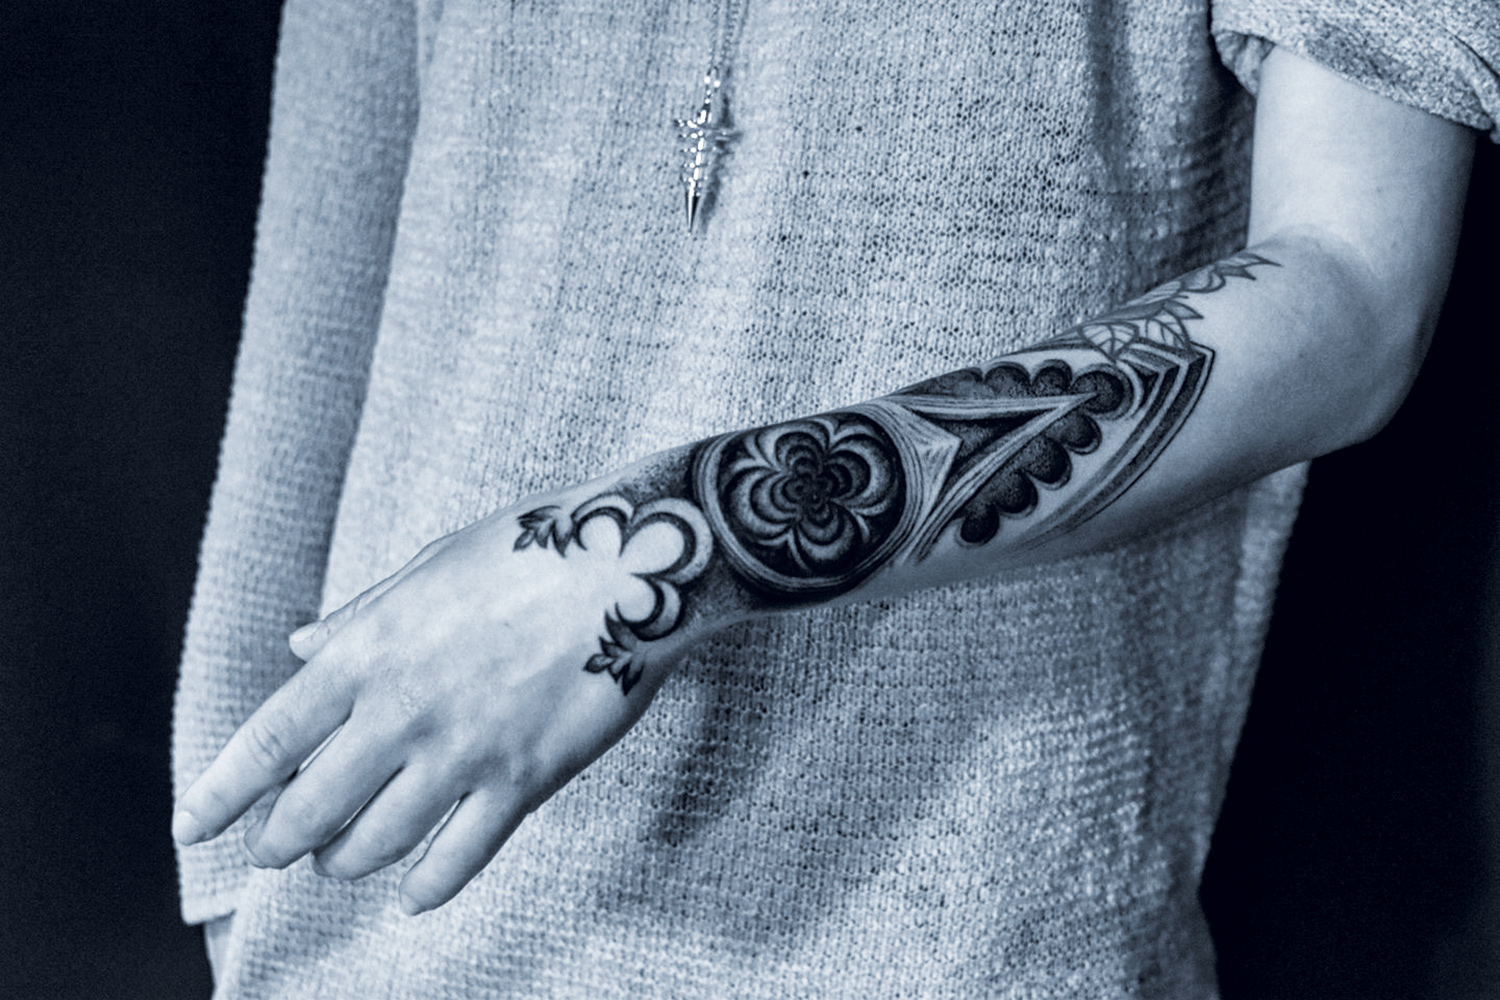 Placide Avantia - decorative gothic arm tattoo